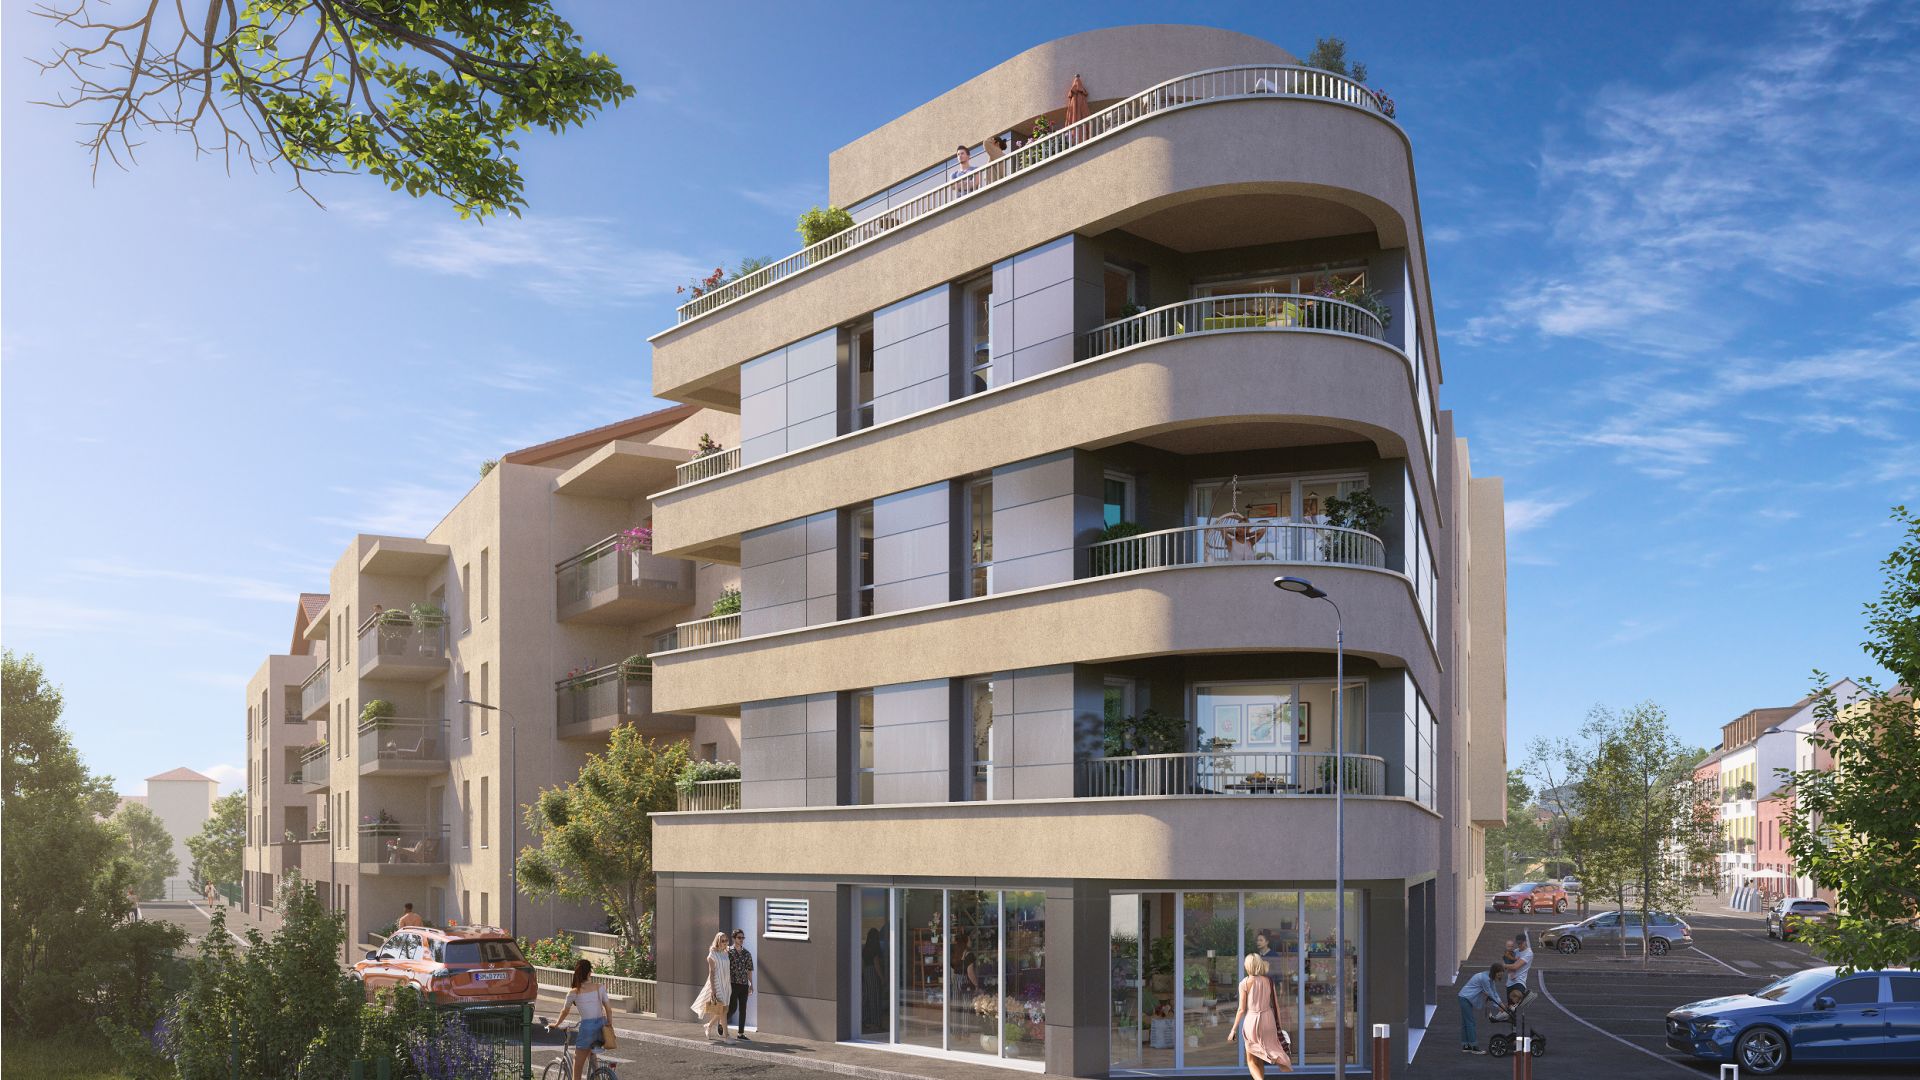 Greencity immobilier - achat appartements neufs du T2 au T4 - Résidence Nova Bella - 74130 Bonneville